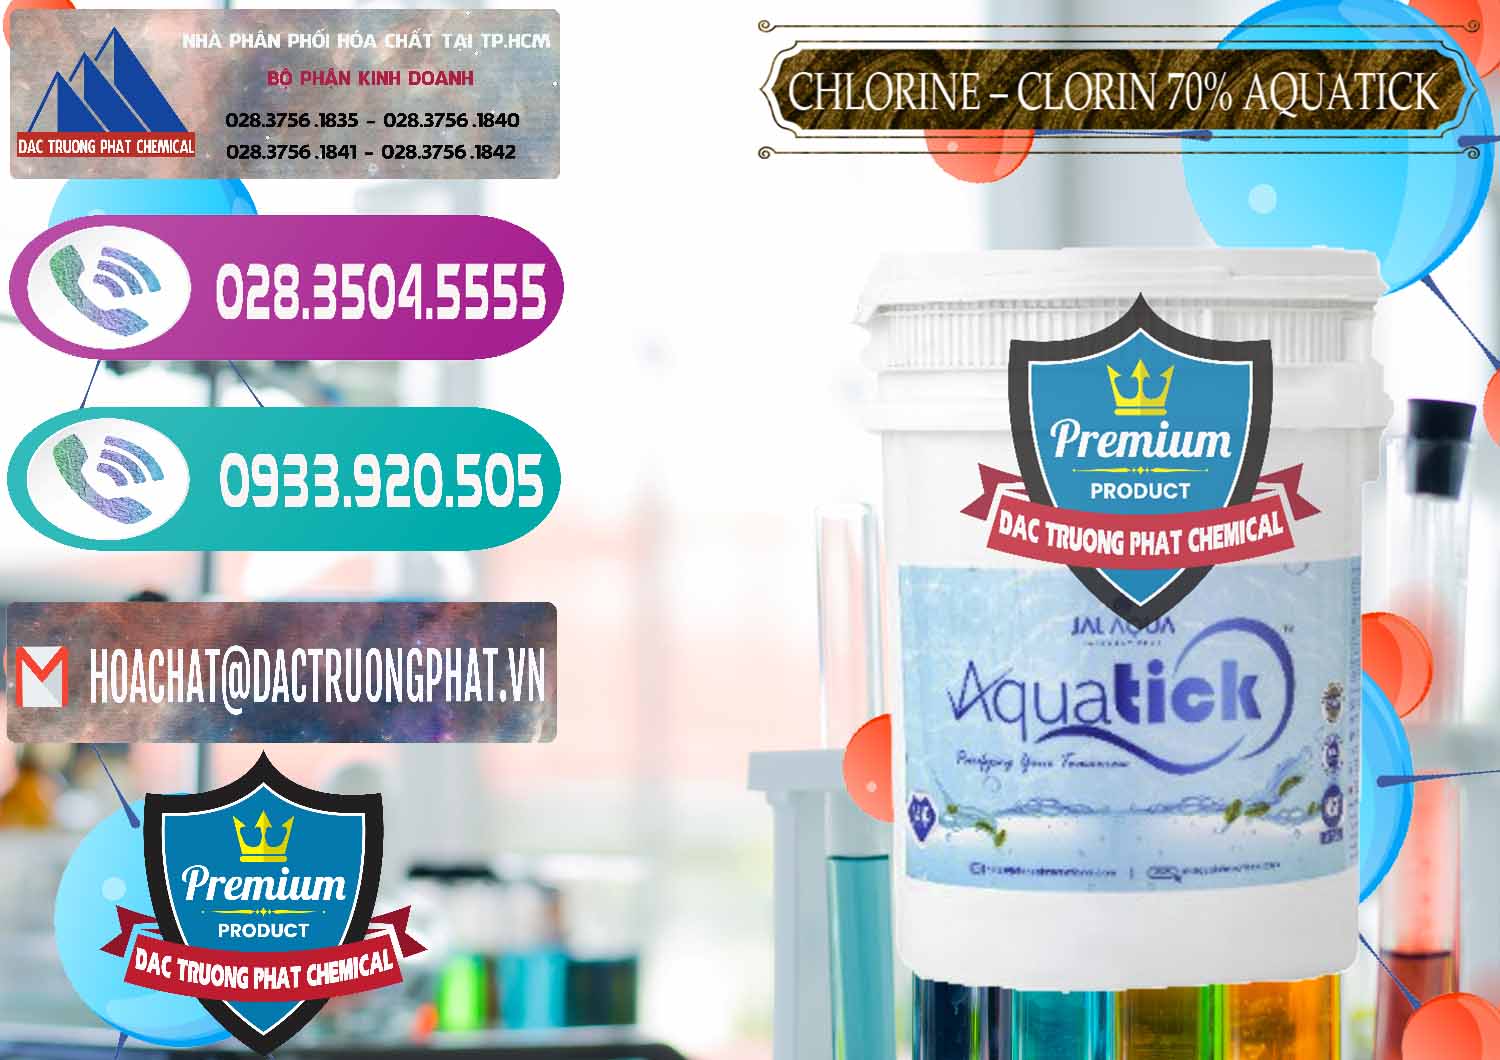 Cty chuyên cung ứng & bán Chlorine – Clorin 70% Aquatick Thùng Cao Jal Aqua Ấn Độ India - 0237 - Đơn vị nhập khẩu - phân phối hóa chất tại TP.HCM - hoachatxulynuoc.com